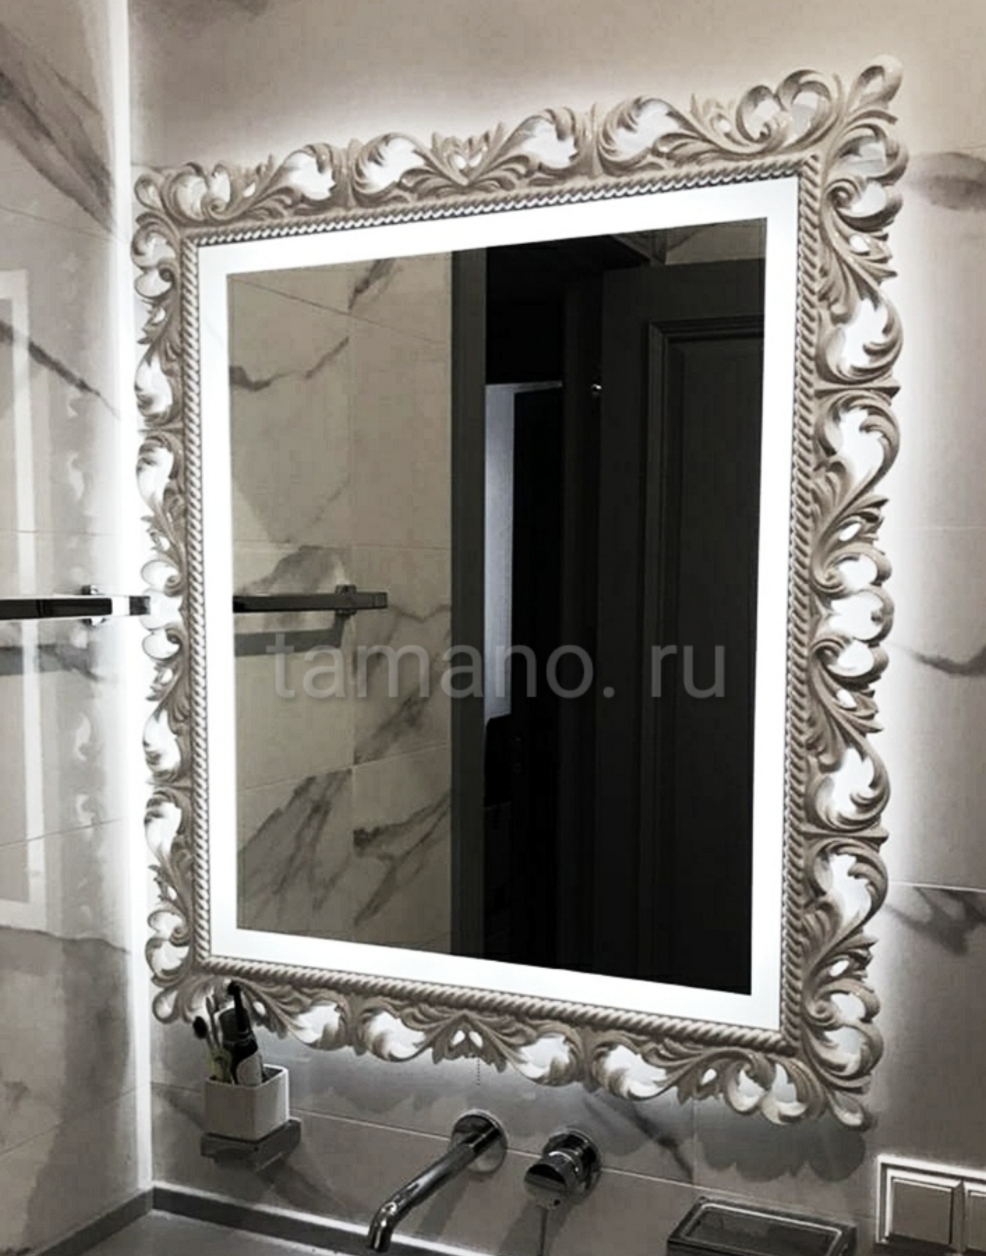 Зеркало с подсветкой в резном багете арт. 007 белый лак.jpg